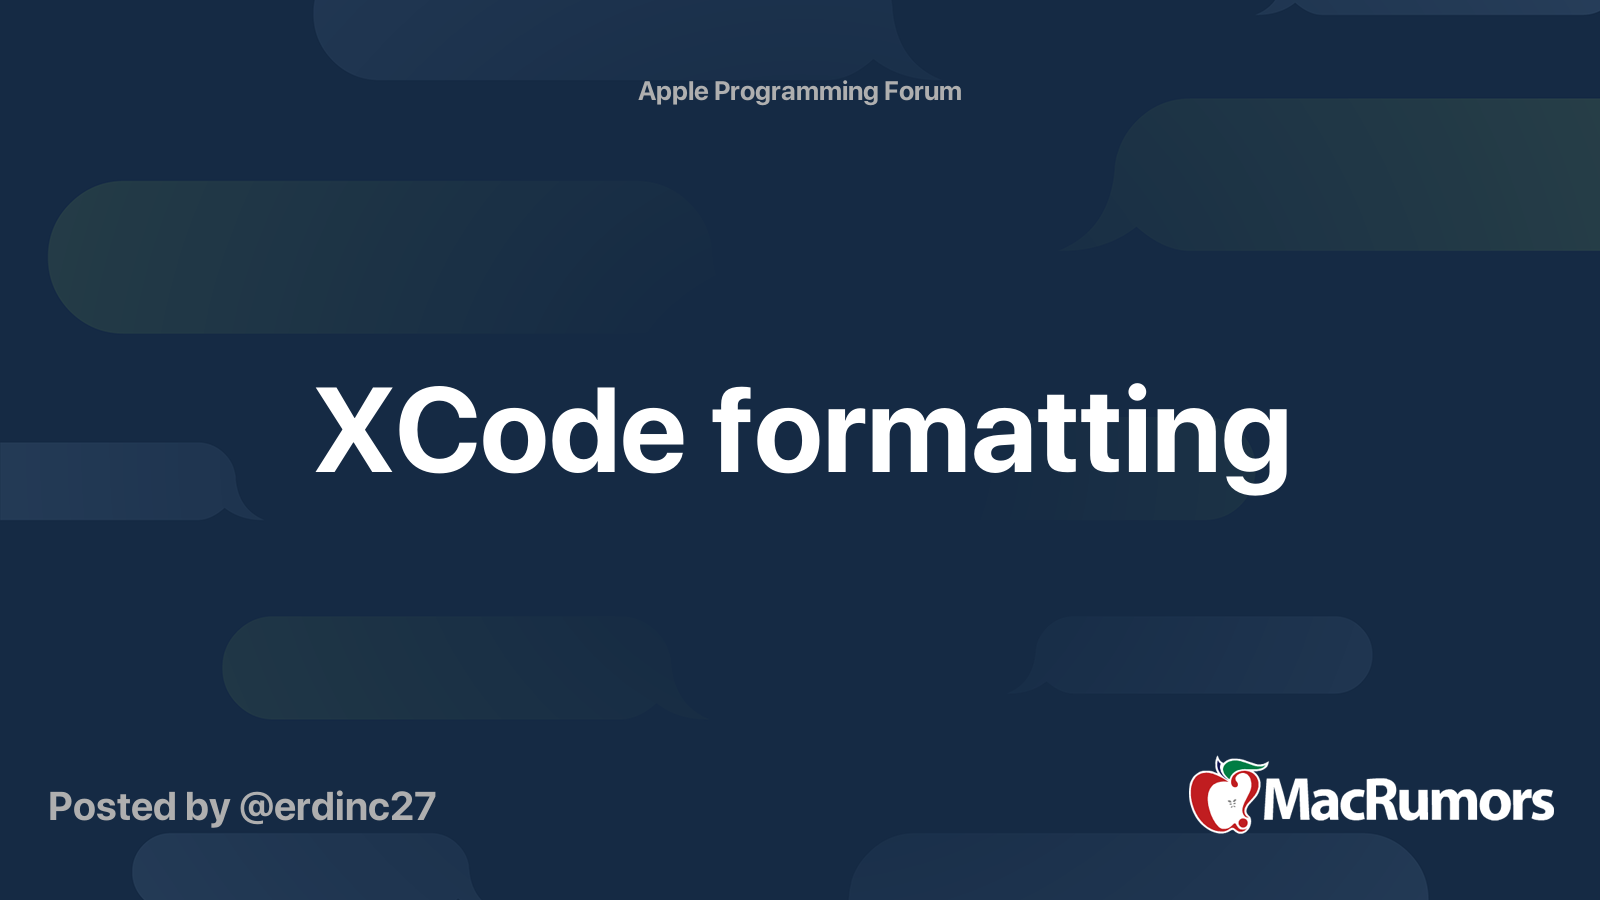 xcode-formatting-macrumors-forums